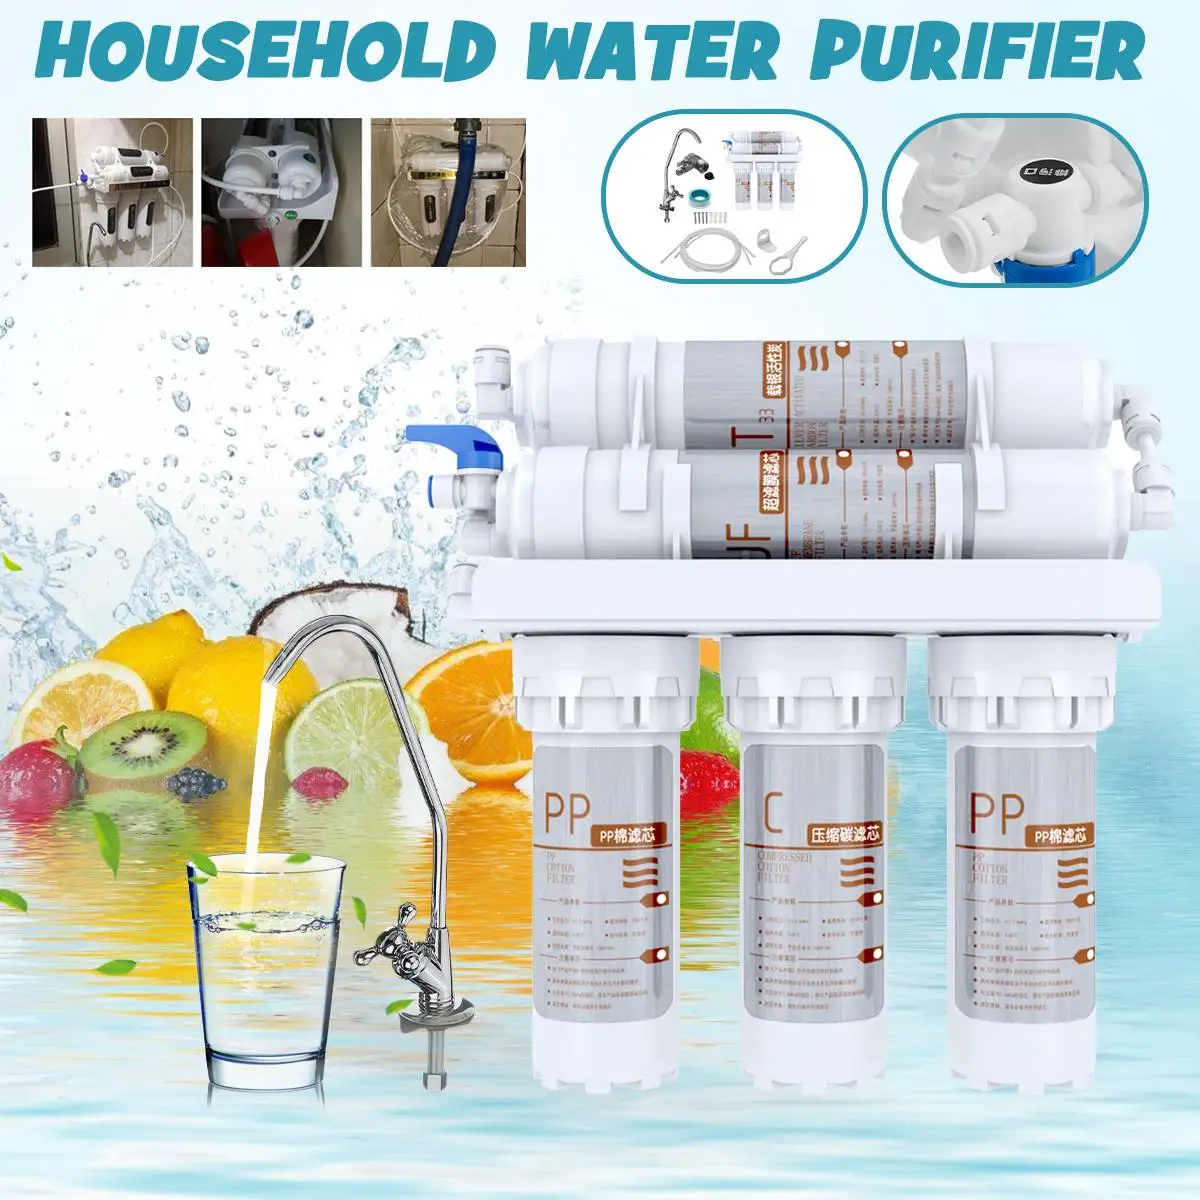 

Система очистки воды домашняя система фильтрации воды очиститель обратный осмос 5 этапов кухонная система фильтрации воды очистка